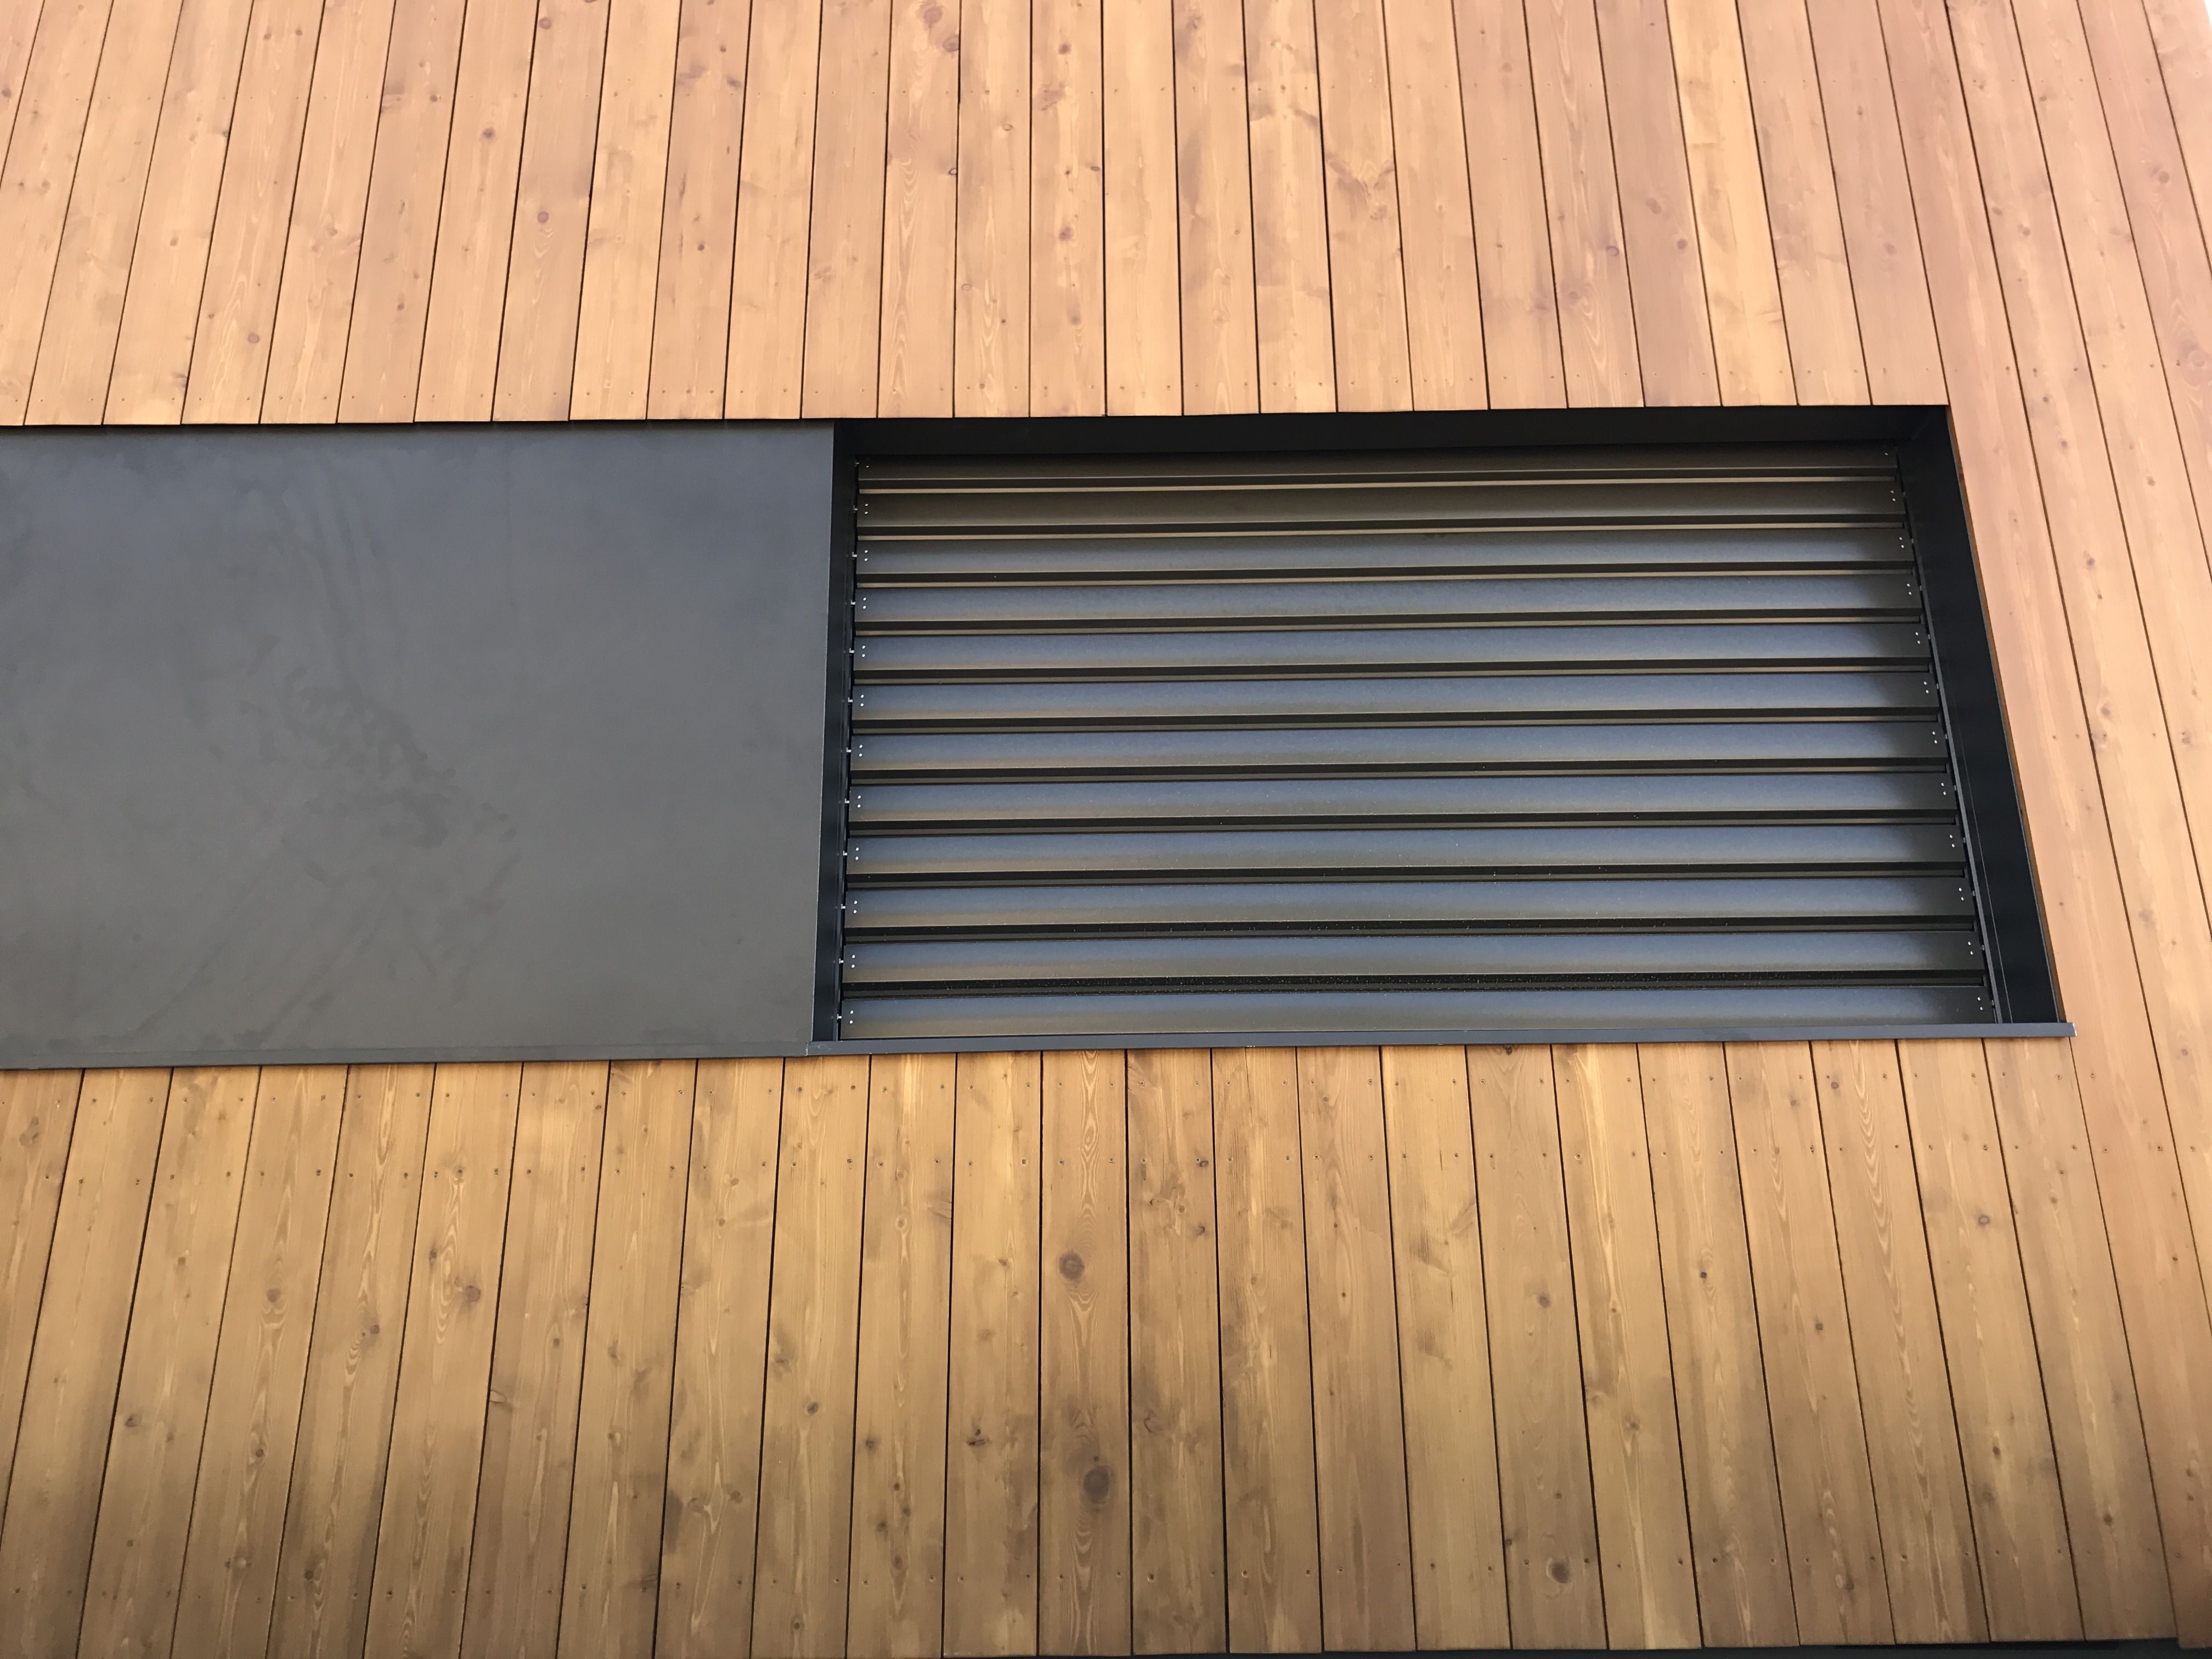 Foto 35 de Carpintería de aluminio, metálica y PVC en Terrassa | Tancaments Cusidó